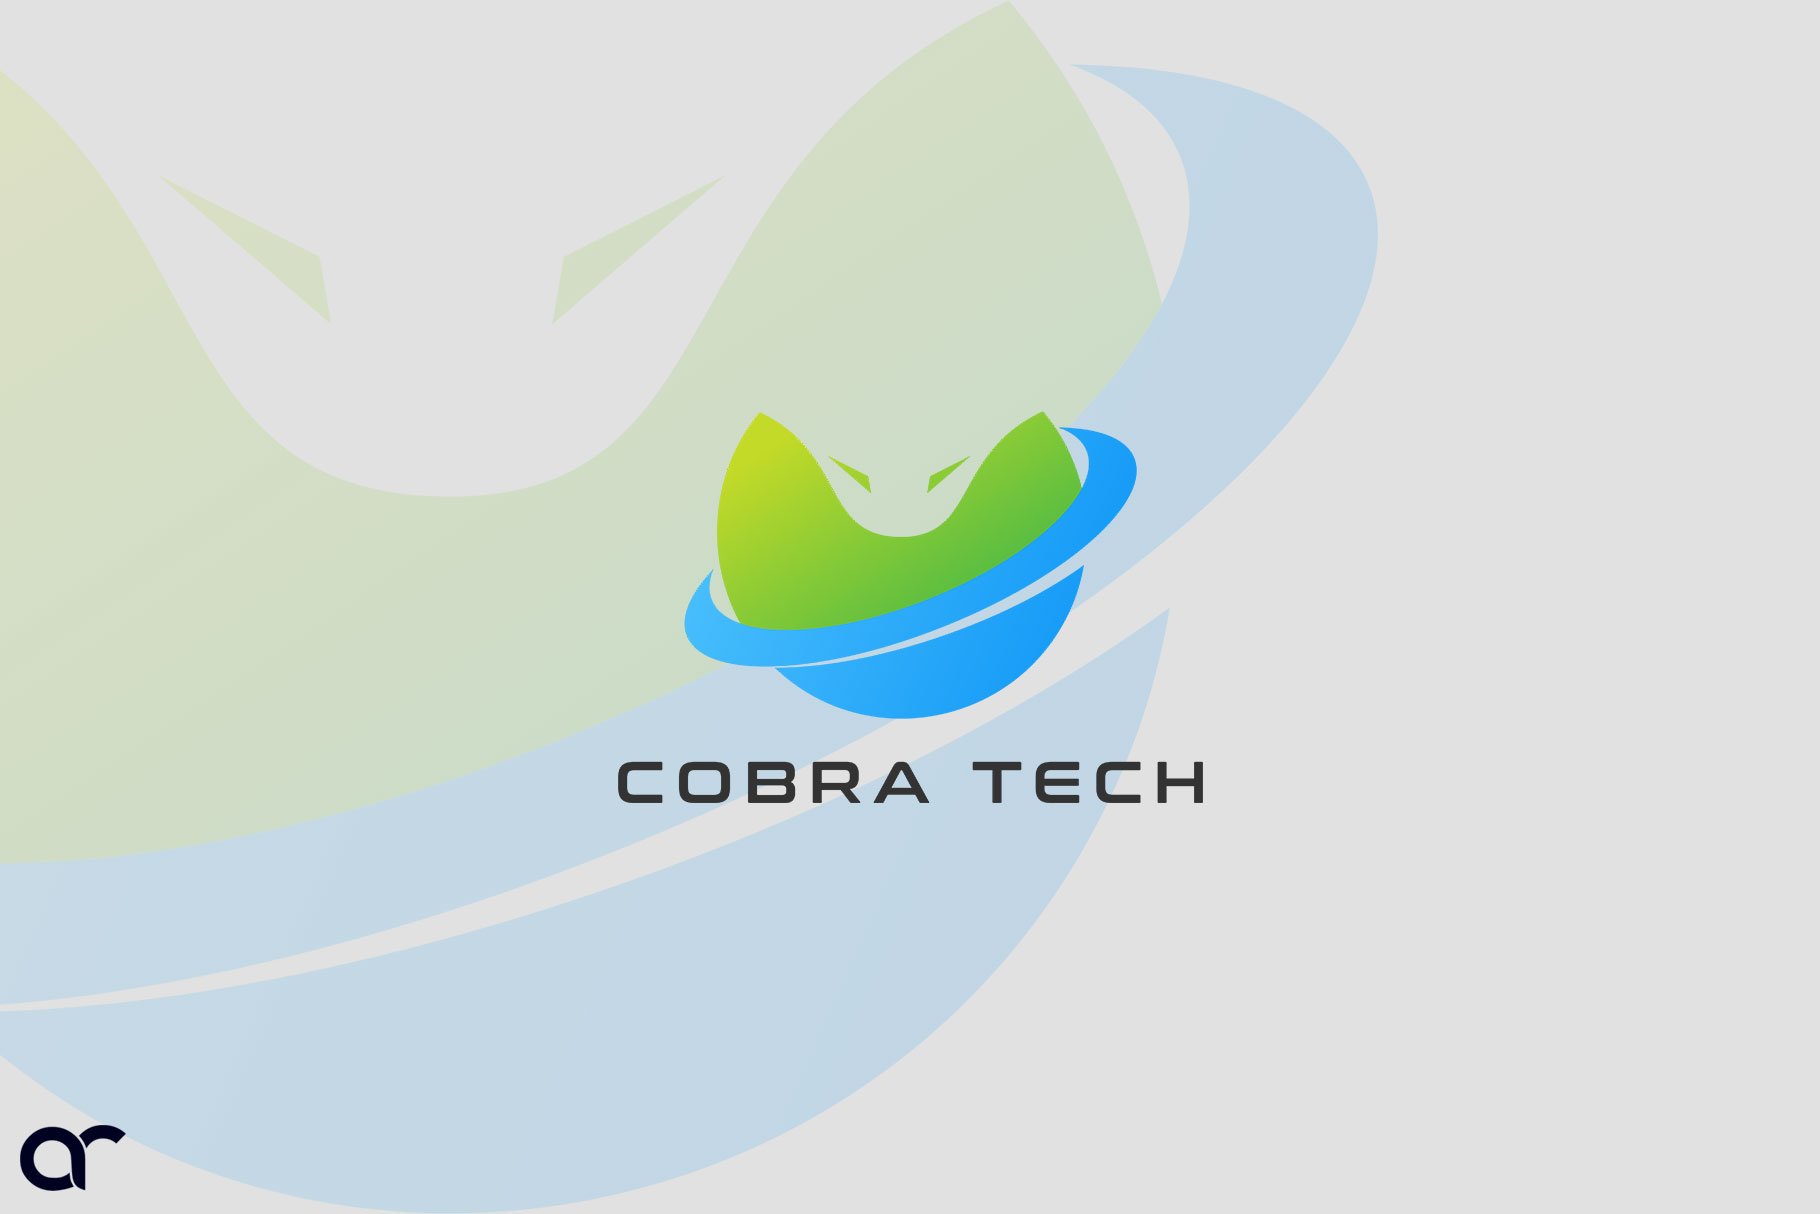 Cobra Tech Logos preview image.